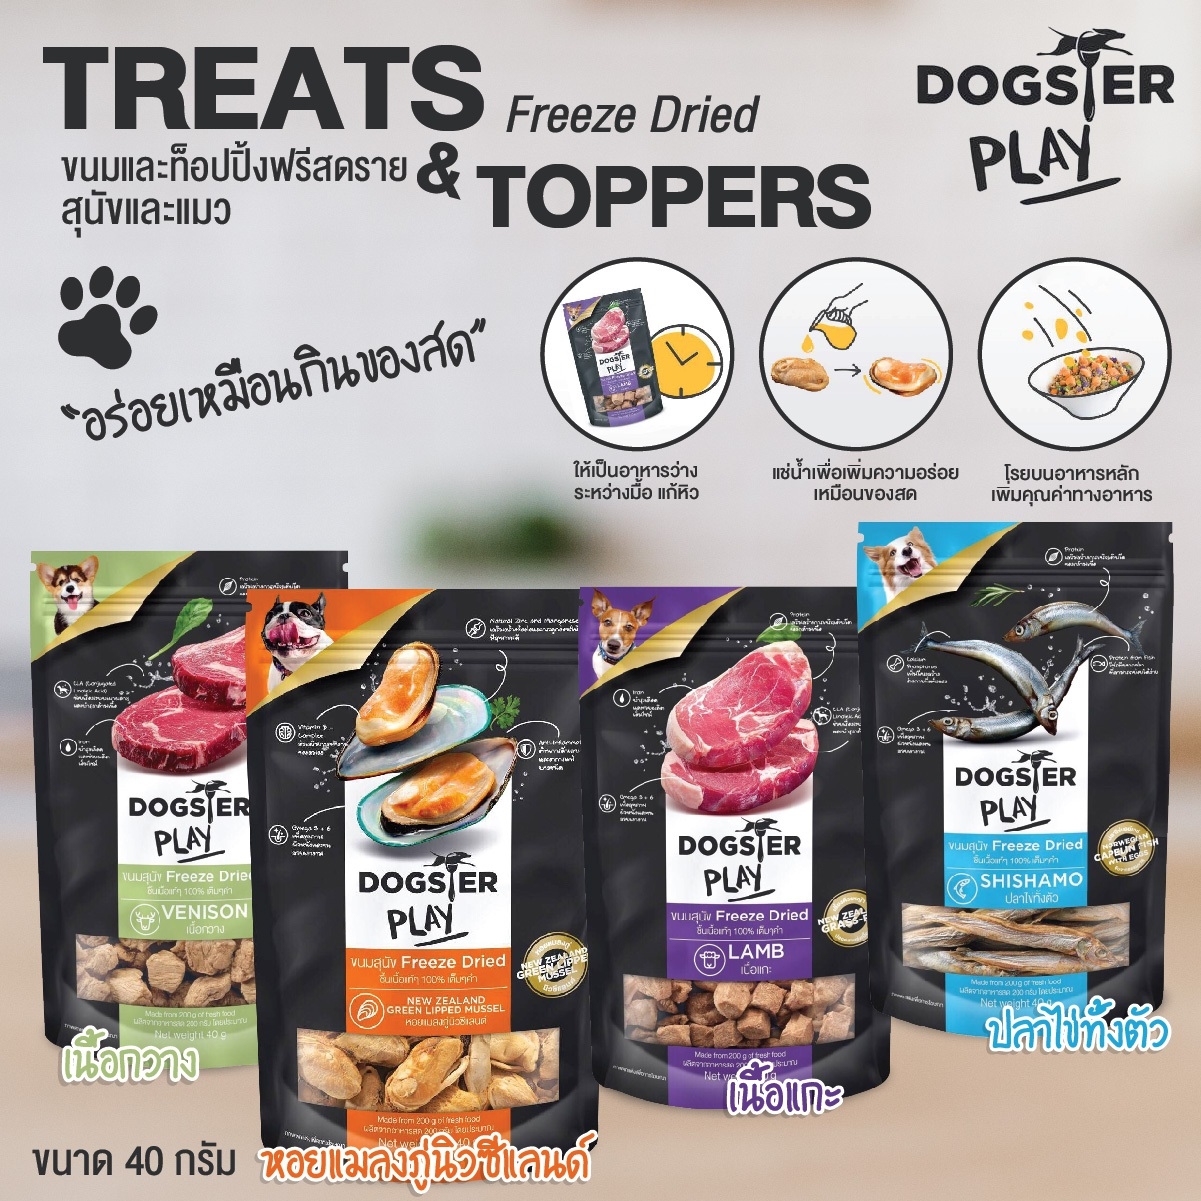 Dogster ขนมสุนัข ขนมแมว Play Freeze Dried ท๊อปปิ้งโรยอาหาร เนื้อชิ้นแท้ๆ 100% เต็มๆคำ ขนาด 40 กรัม (แบบตัวเลือก) โดย Yes pet shop